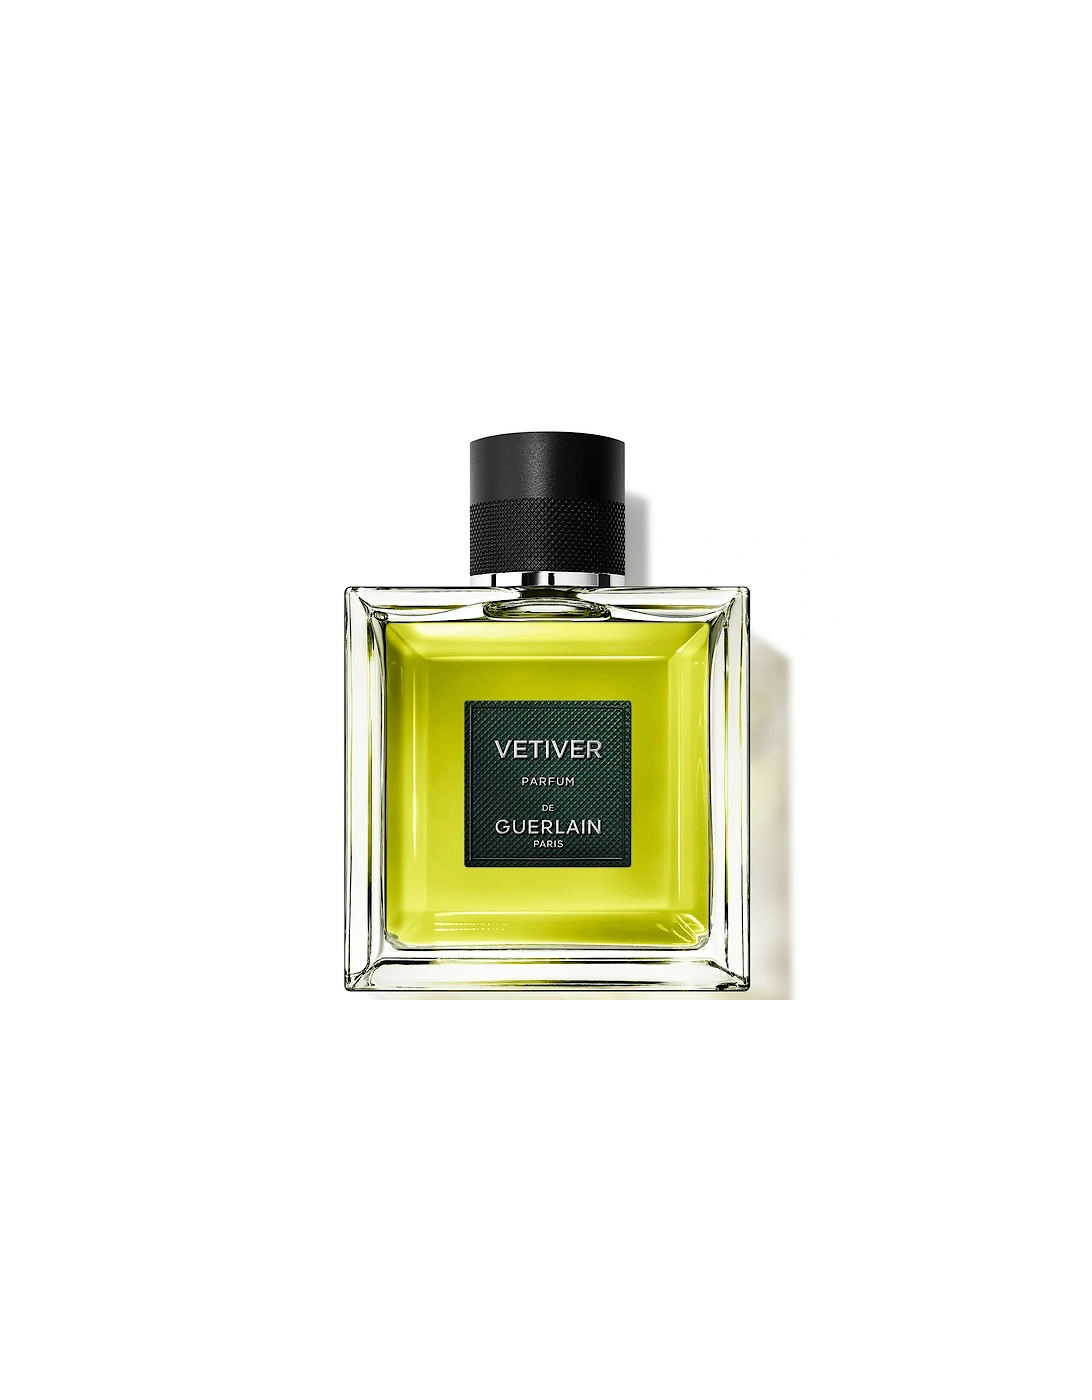 Vétiver Parfum 100ml, 2 of 1